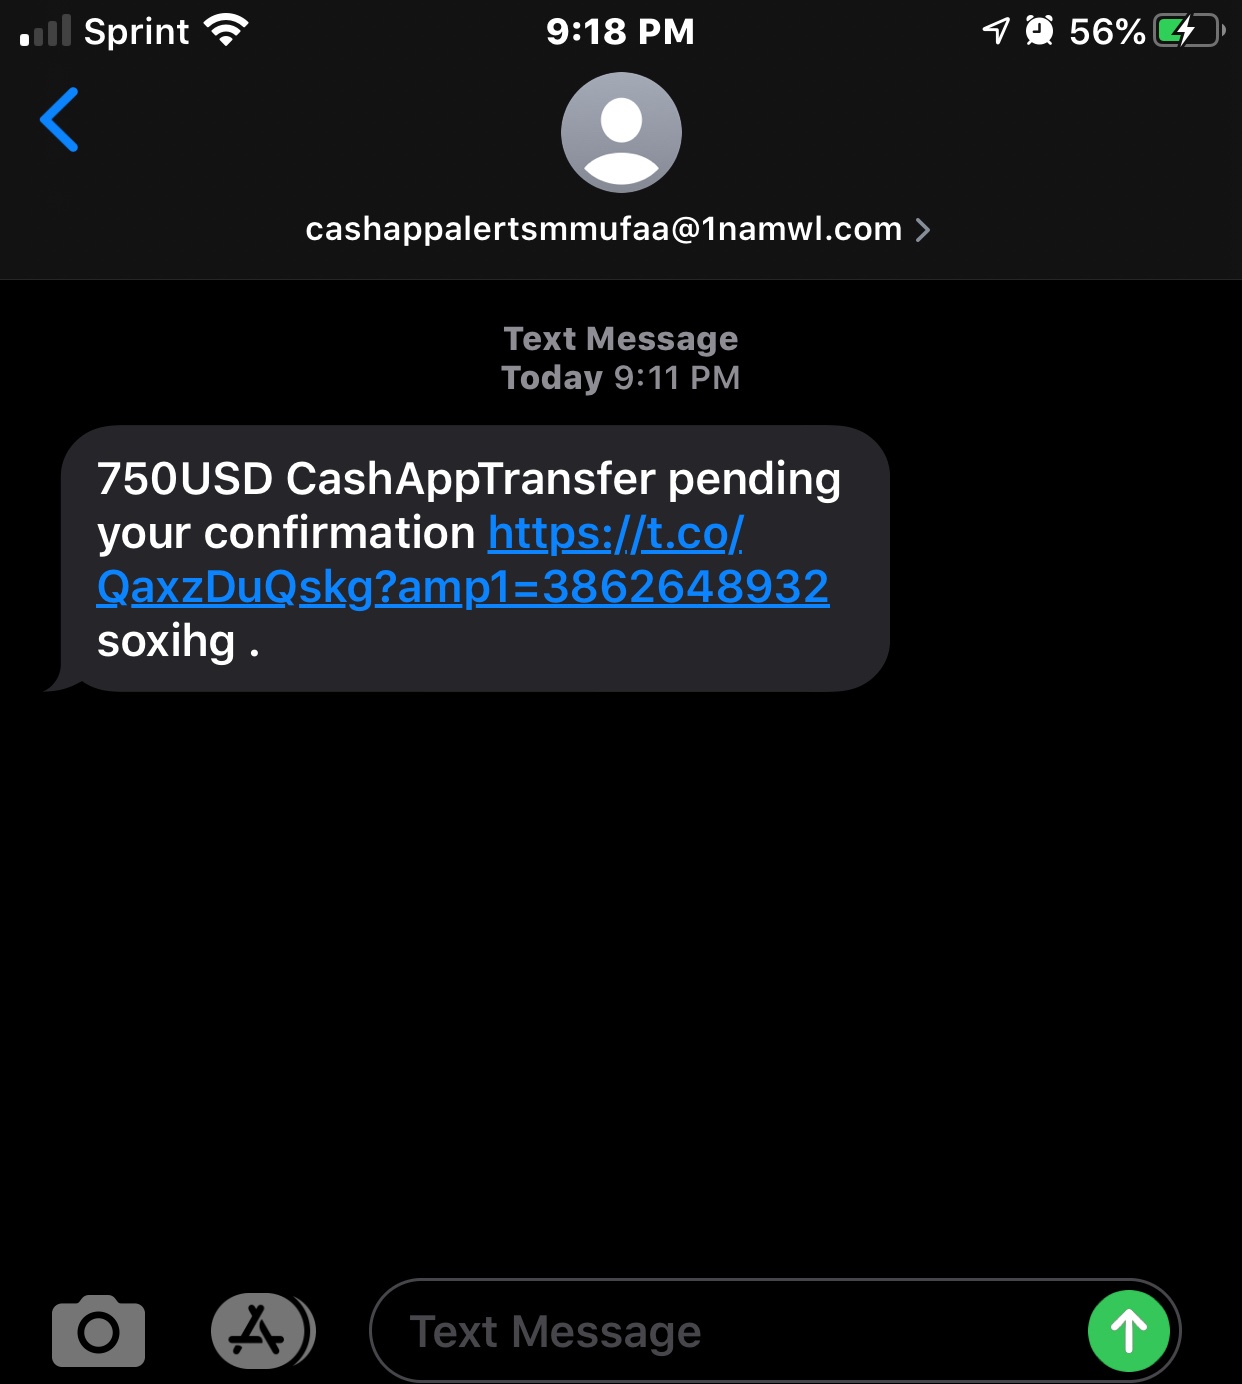 Cash app transfer text message scam - Apple Community